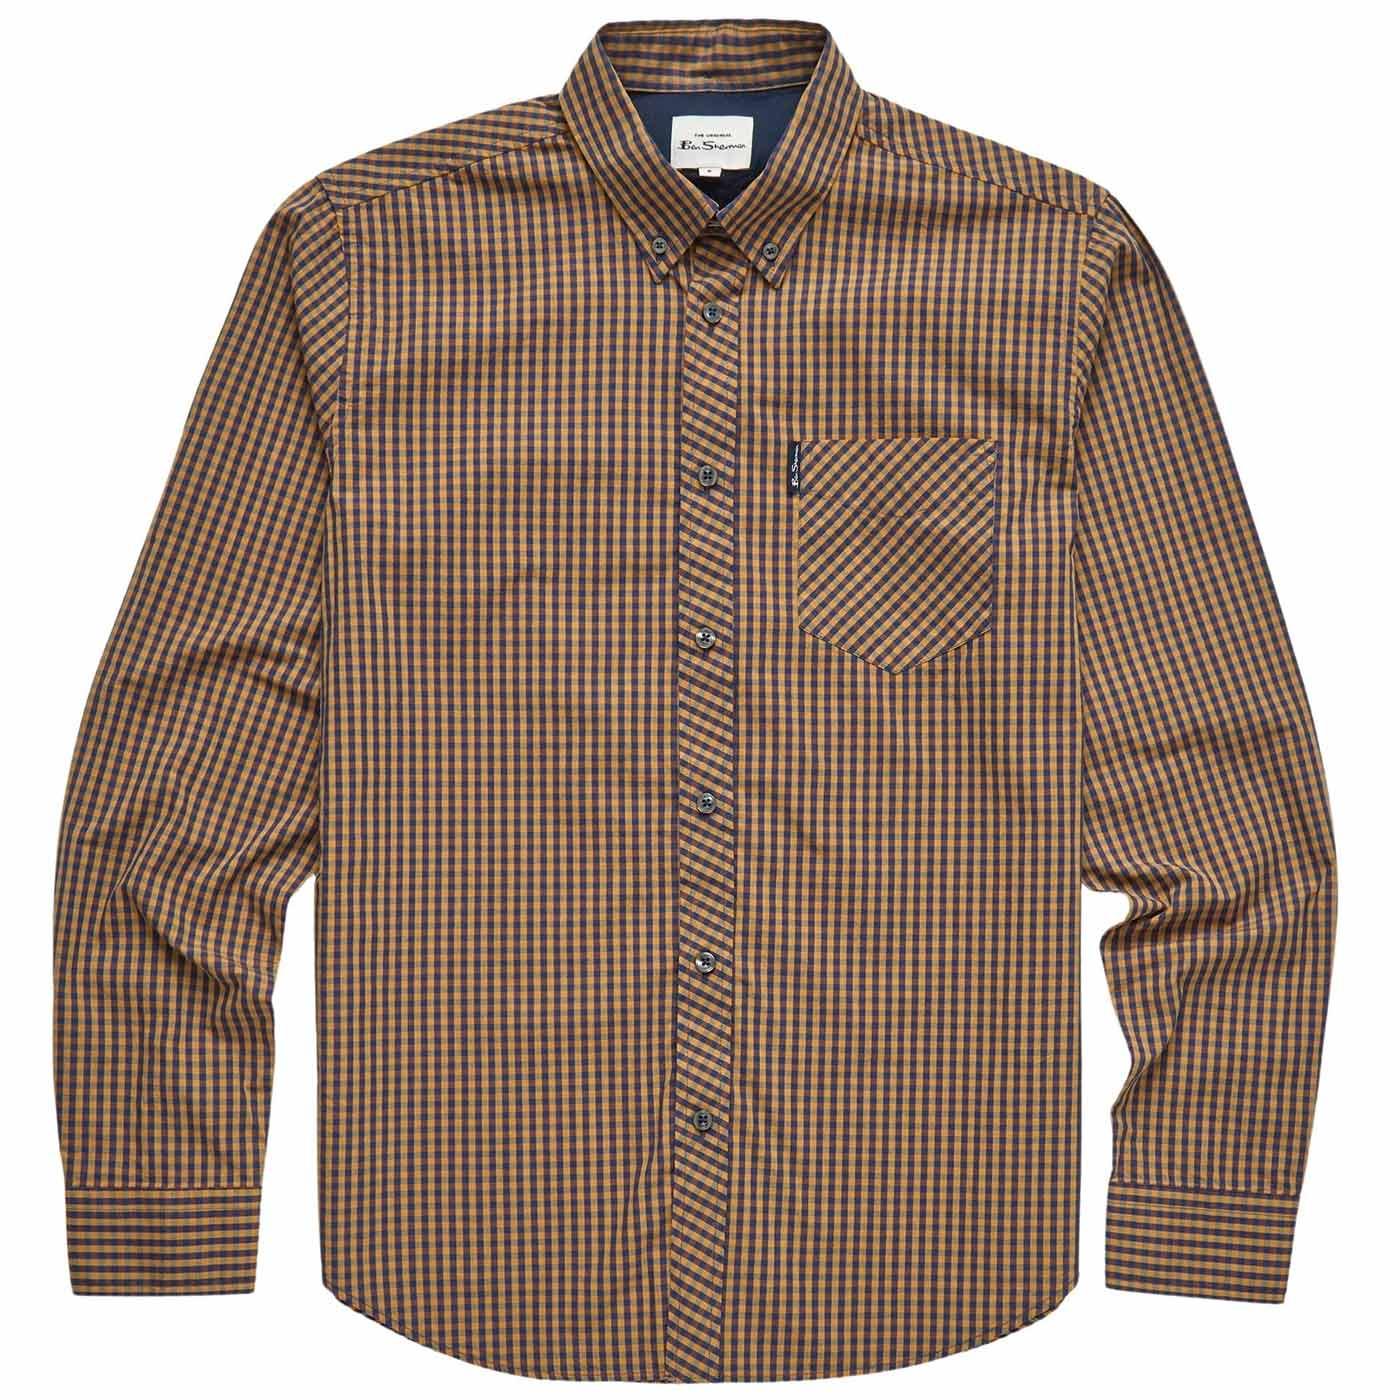 BEN SHERMAN 60s Mod Long Sleeve Gingham Shirt (O)